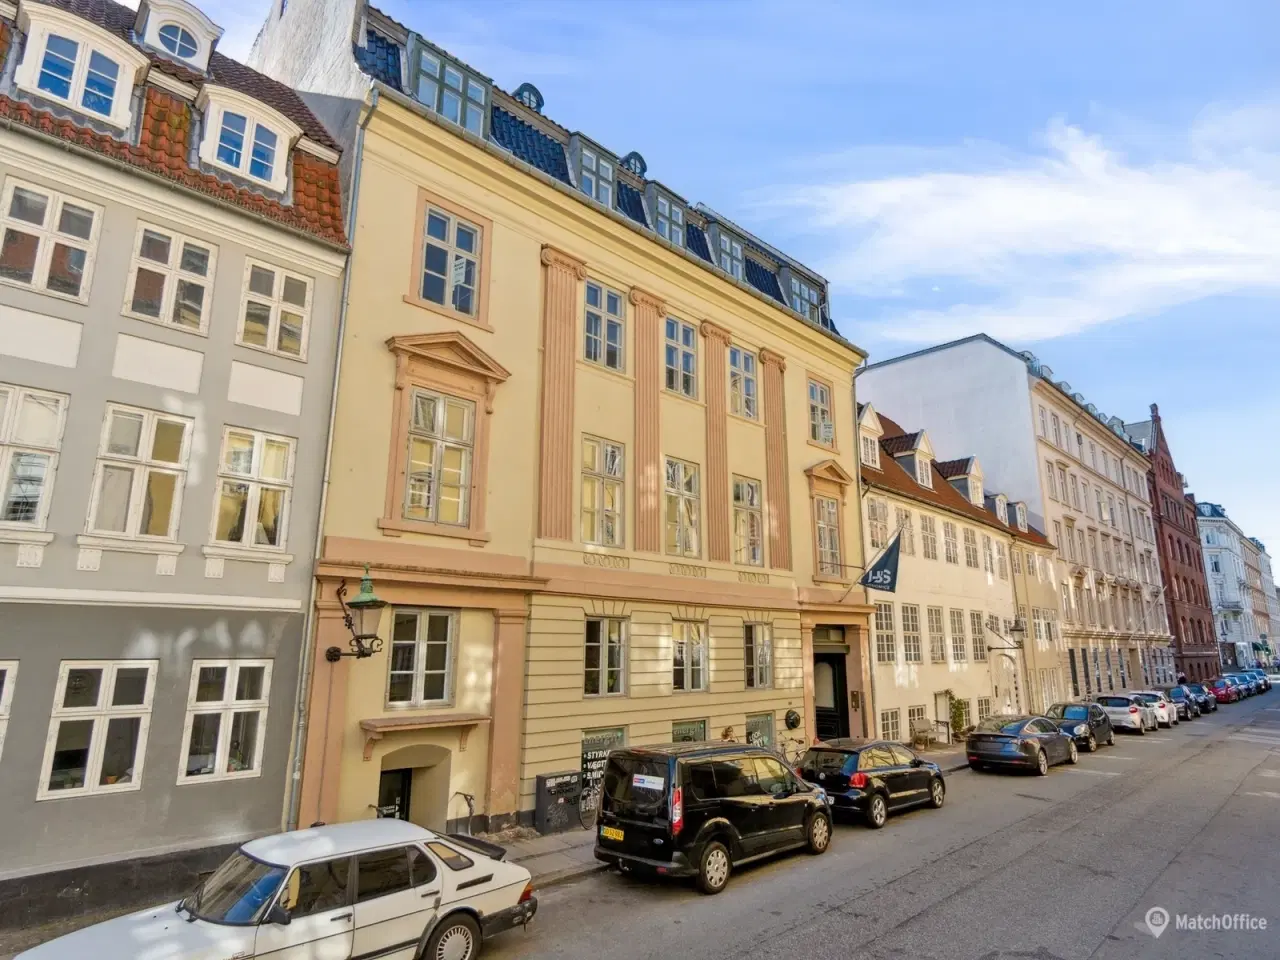 Billede 1 - Kontor i historisk ejendom ved Christiansborg